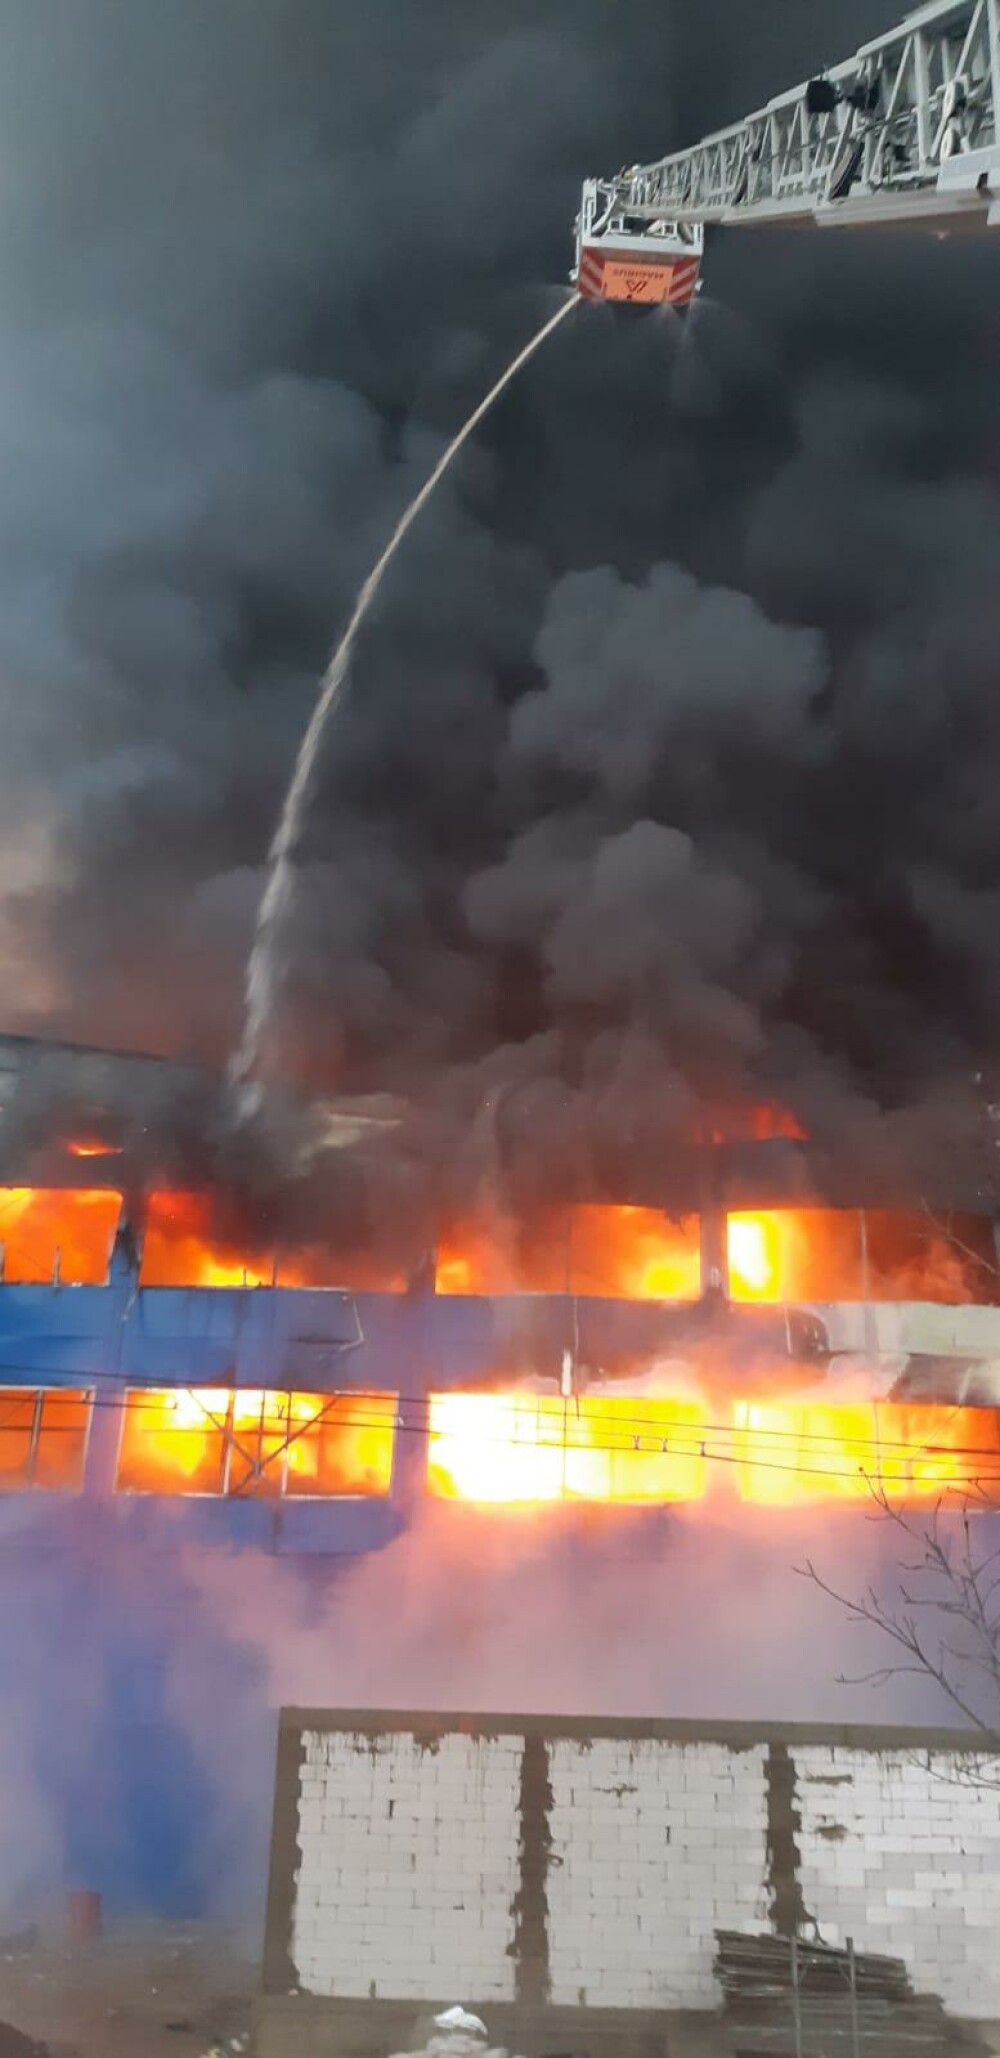 Hală din Câmpia Turzii distrusă complet de un incendiu. Trebuia inaugurată în 2020 - Imaginea 3